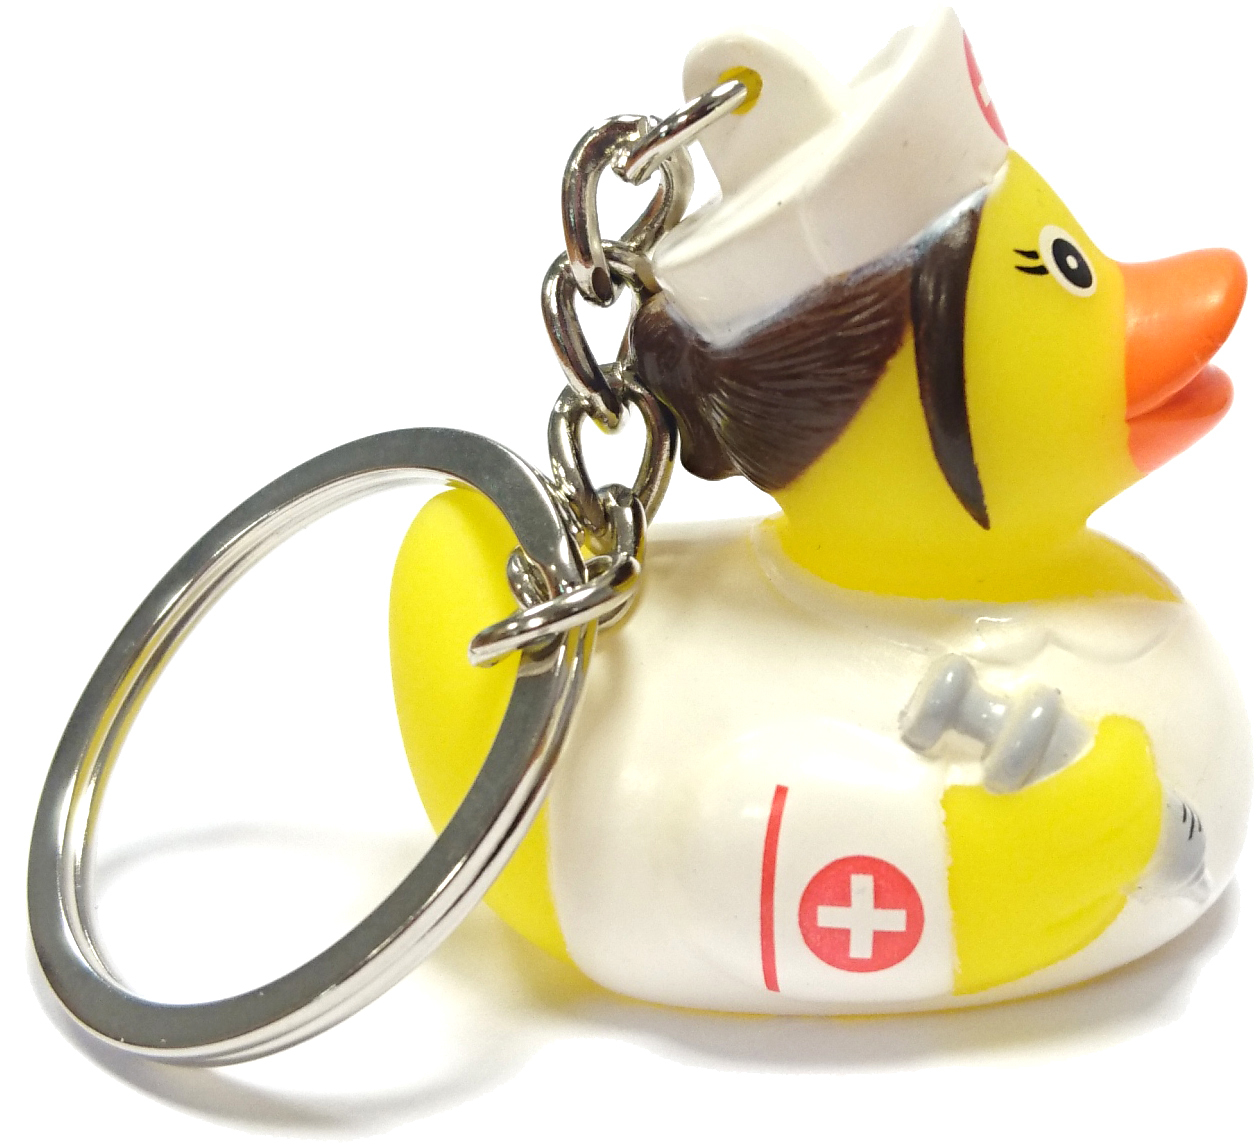 Nurse Rubber Duck Keychain